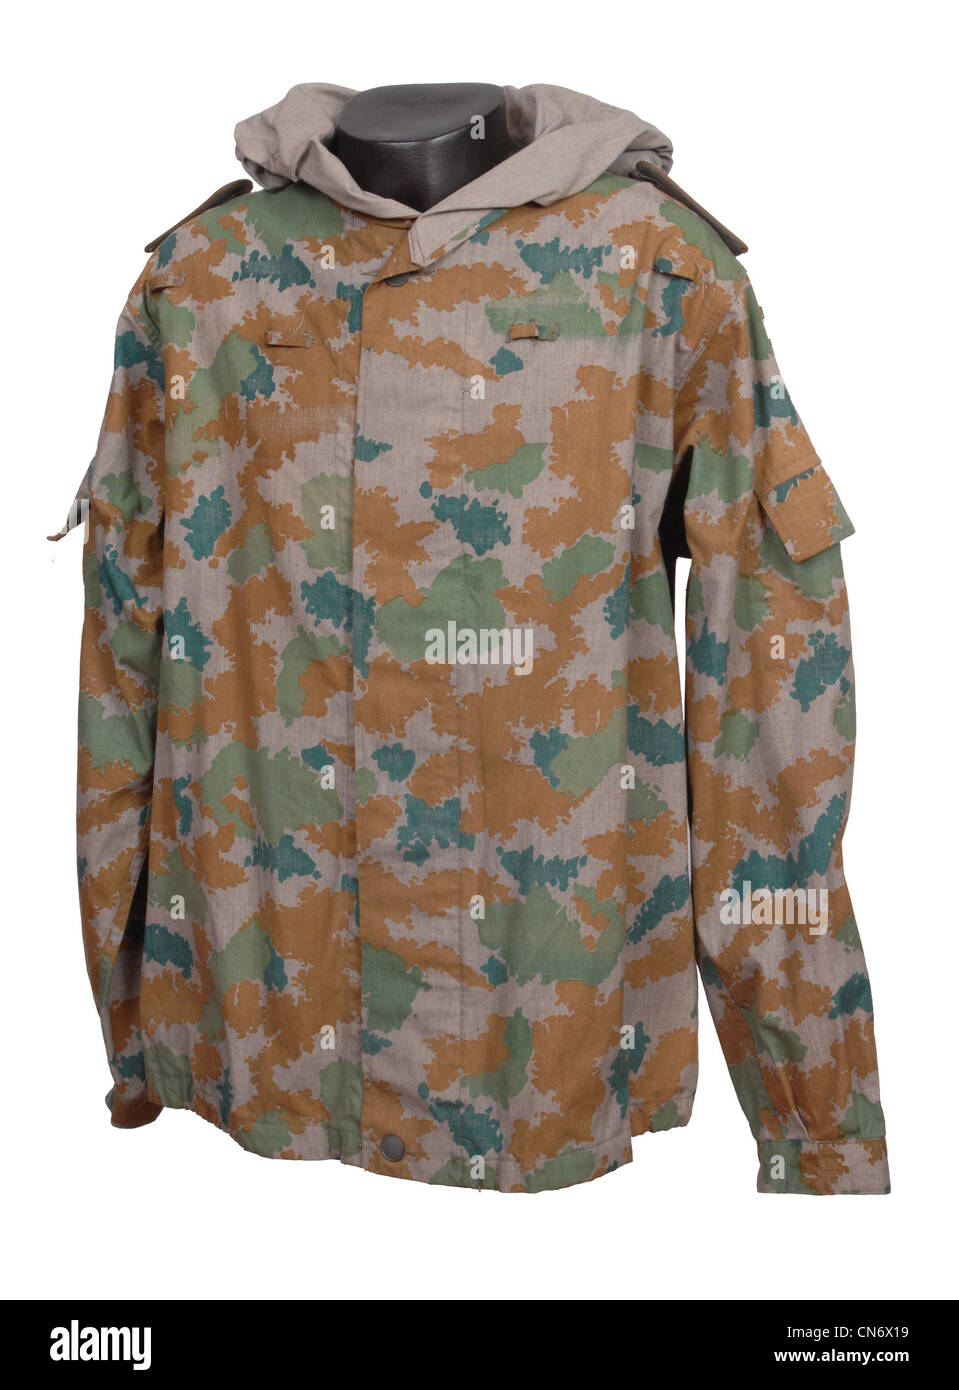 Abbigliamento camouflage come utilizzati dalle forze militari. Inizio NVA tedesco orientale Blumentarn DDR camo smock Foto Stock